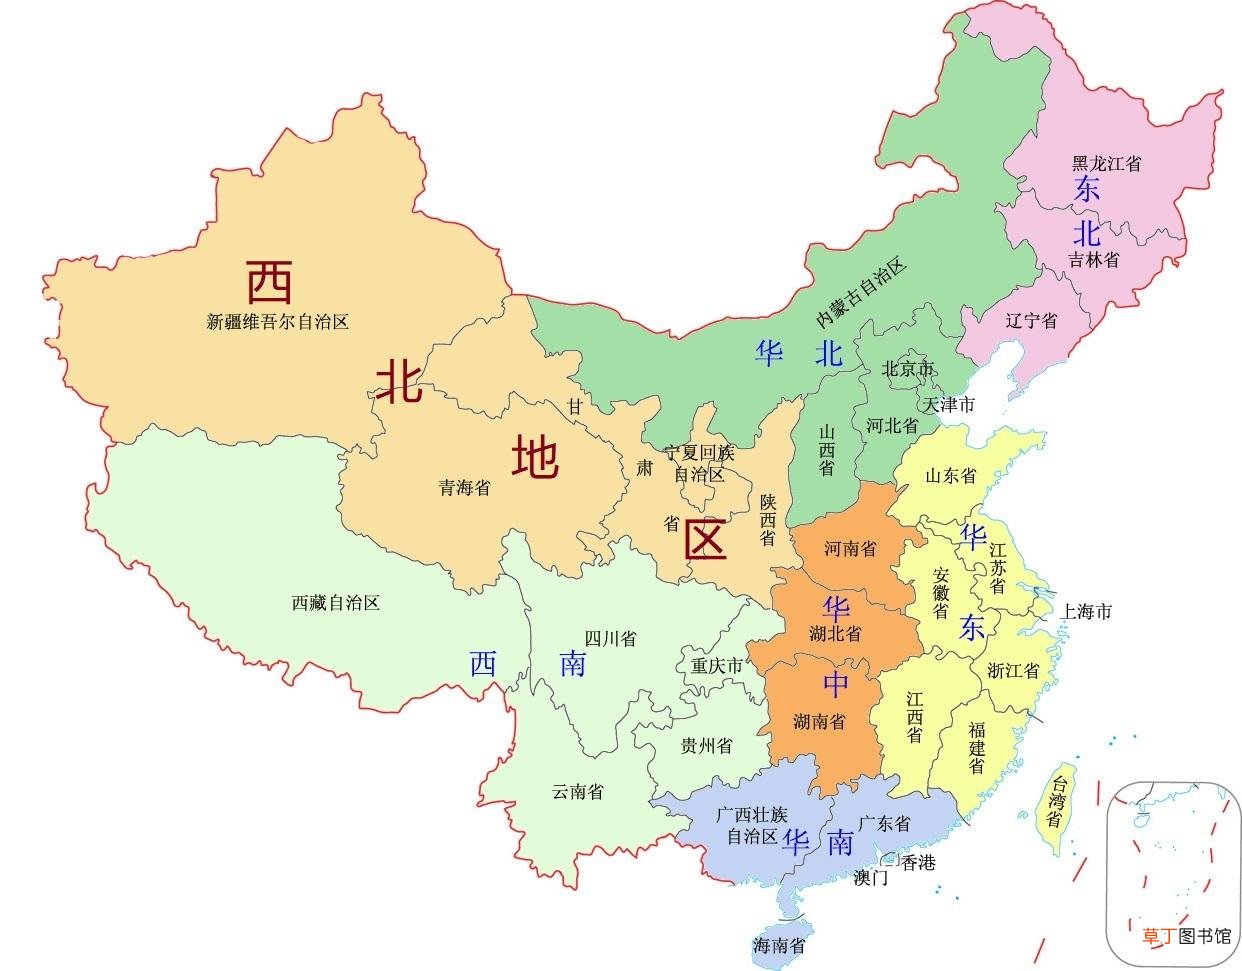 盘点我国西北方向的城市和地区 中国的西北方向有哪些城市